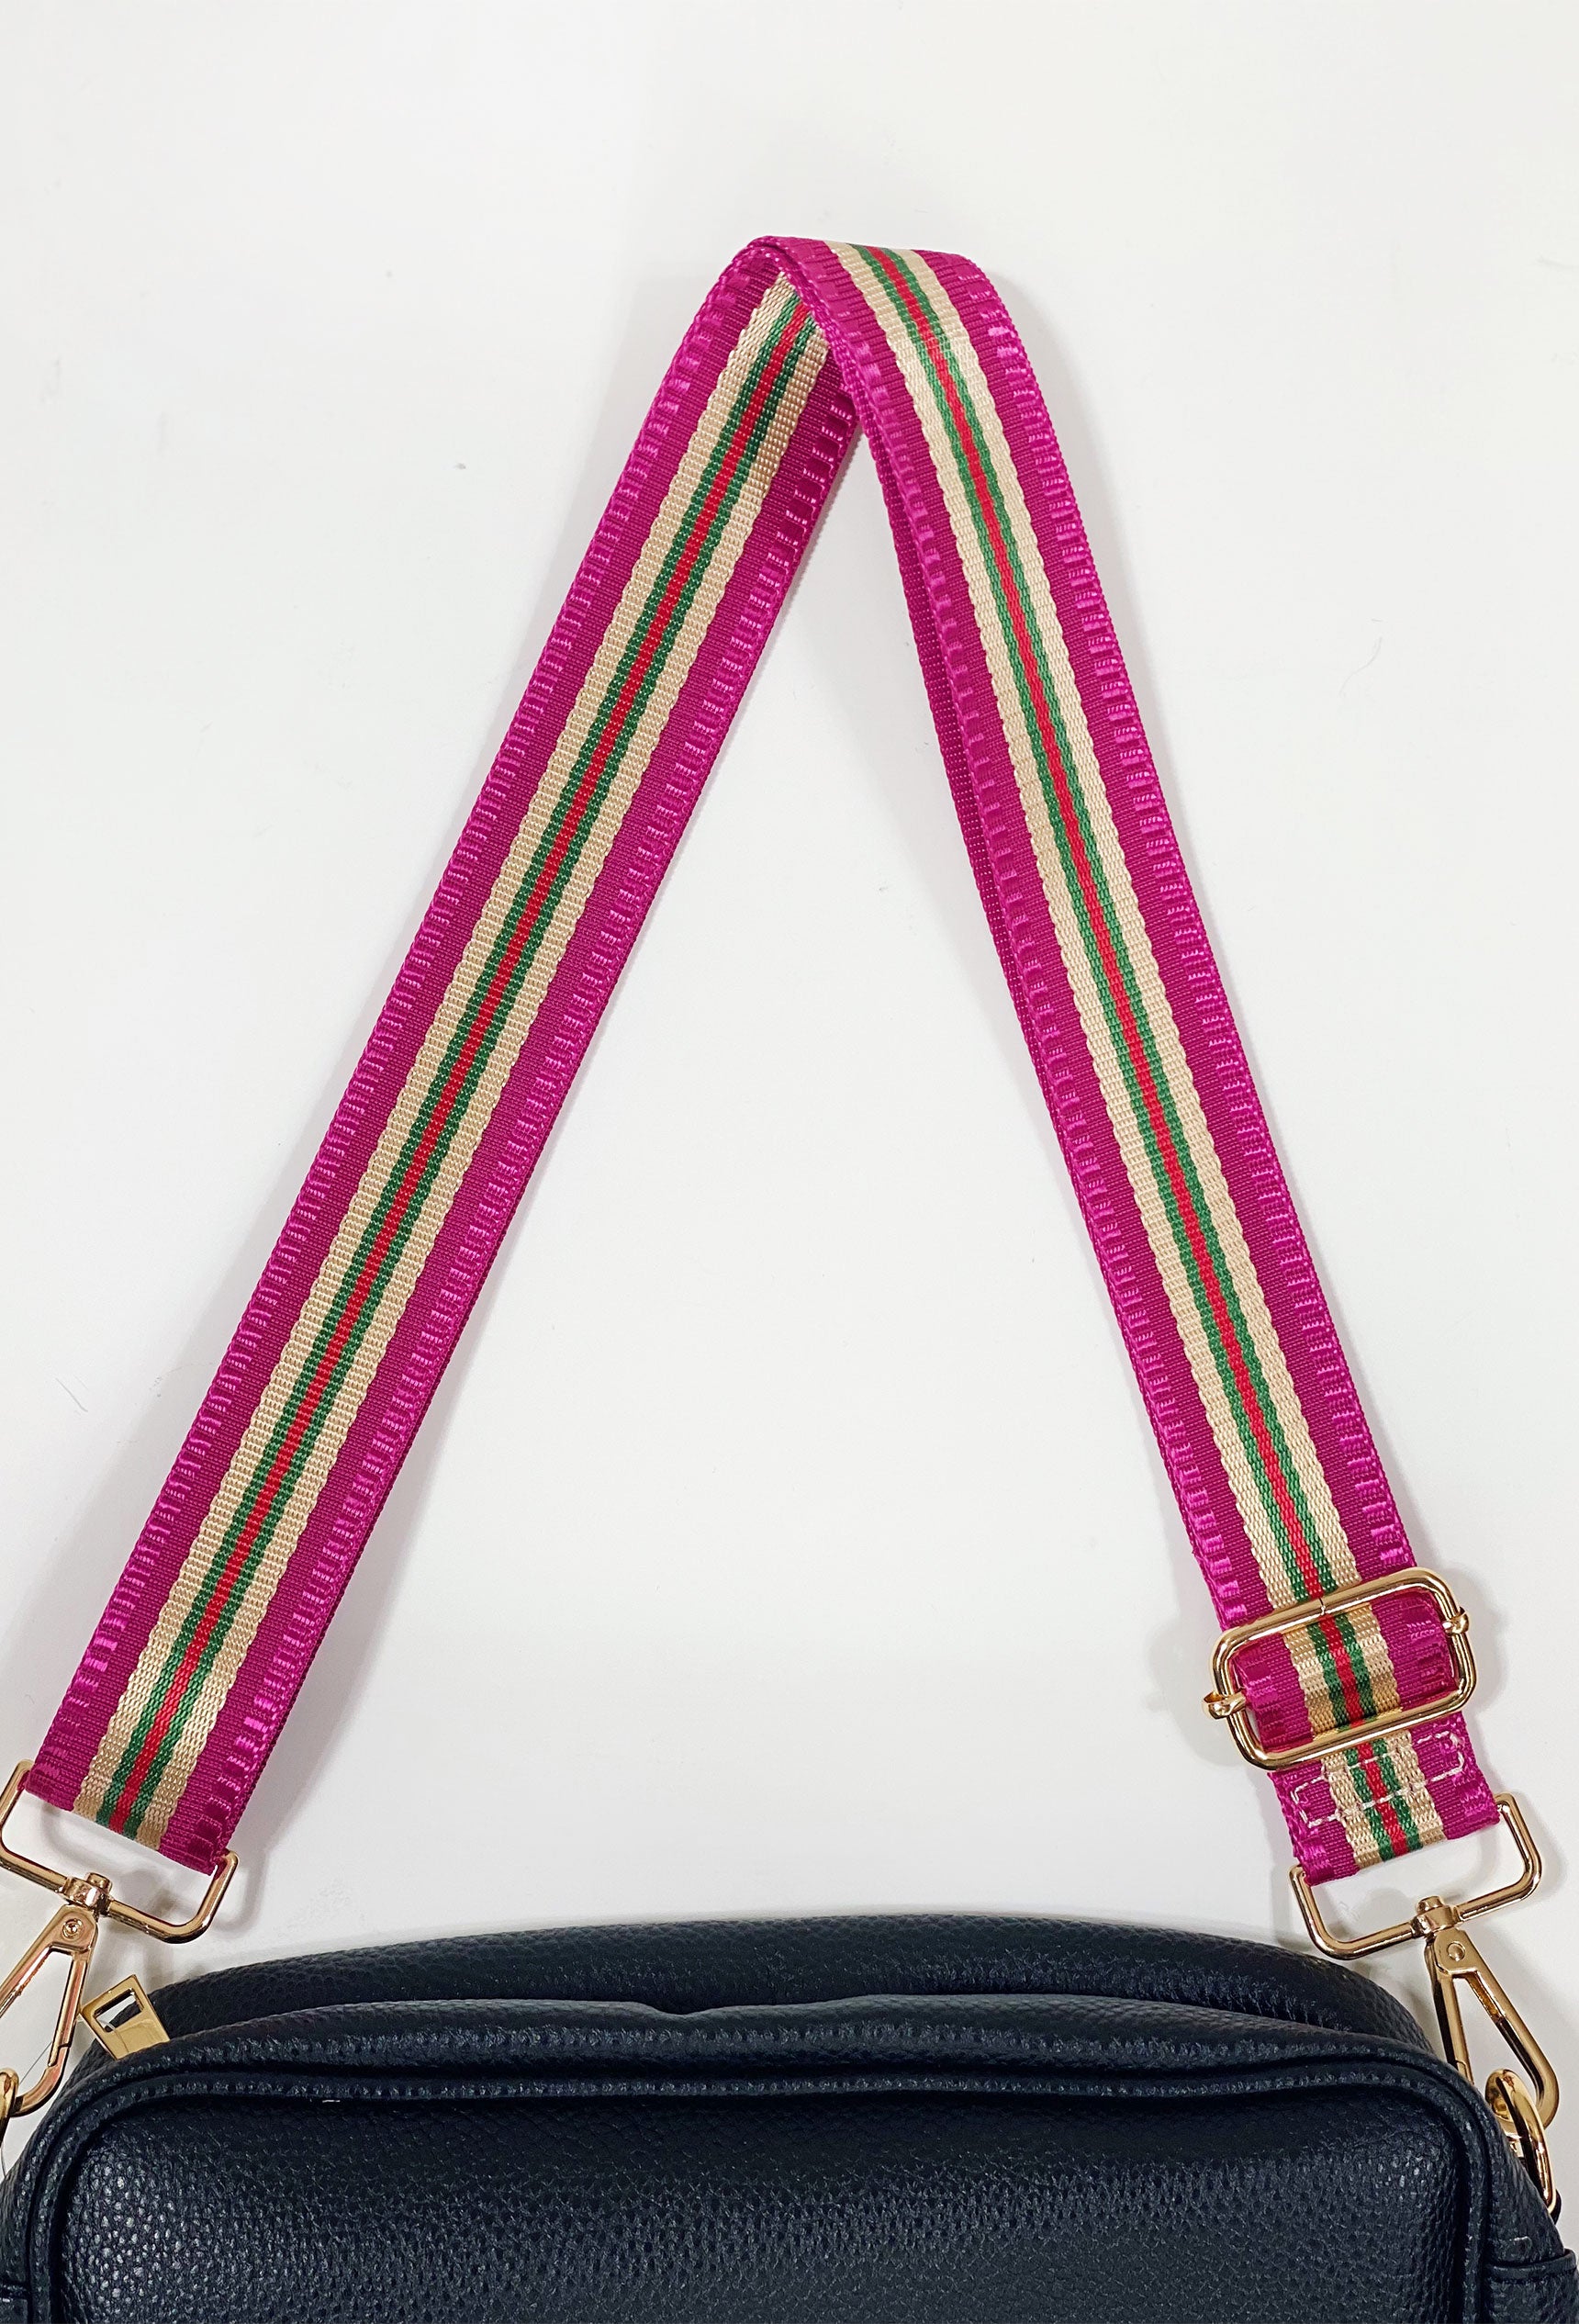 adjustable bag shoulder strap